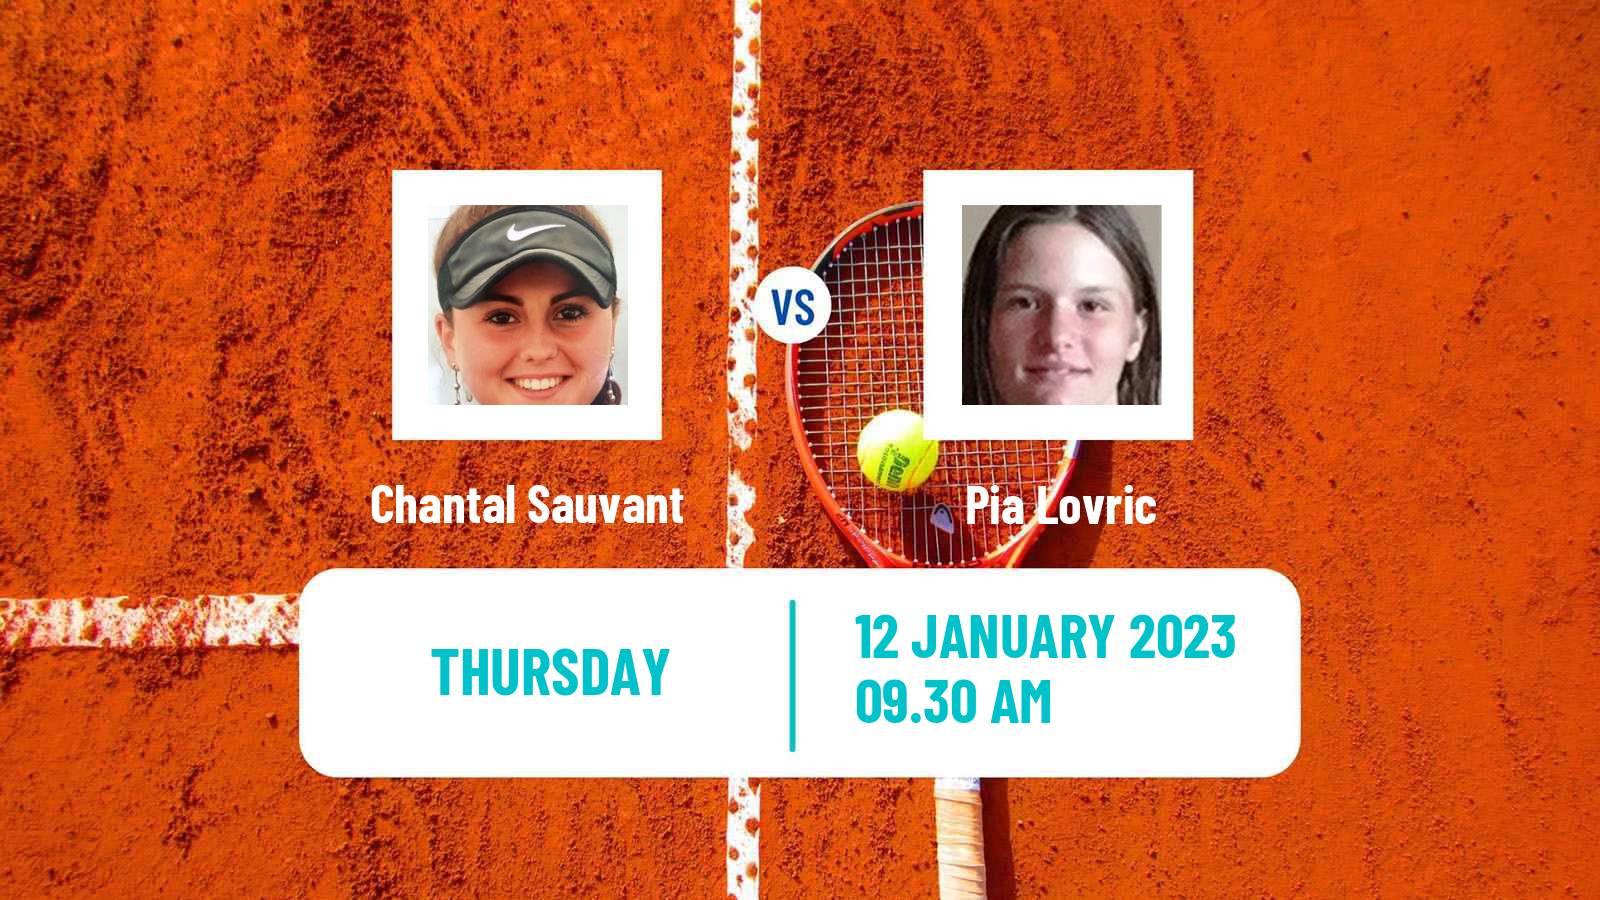 Tennis ITF Tournaments Chantal Sauvant - Pia Lovric